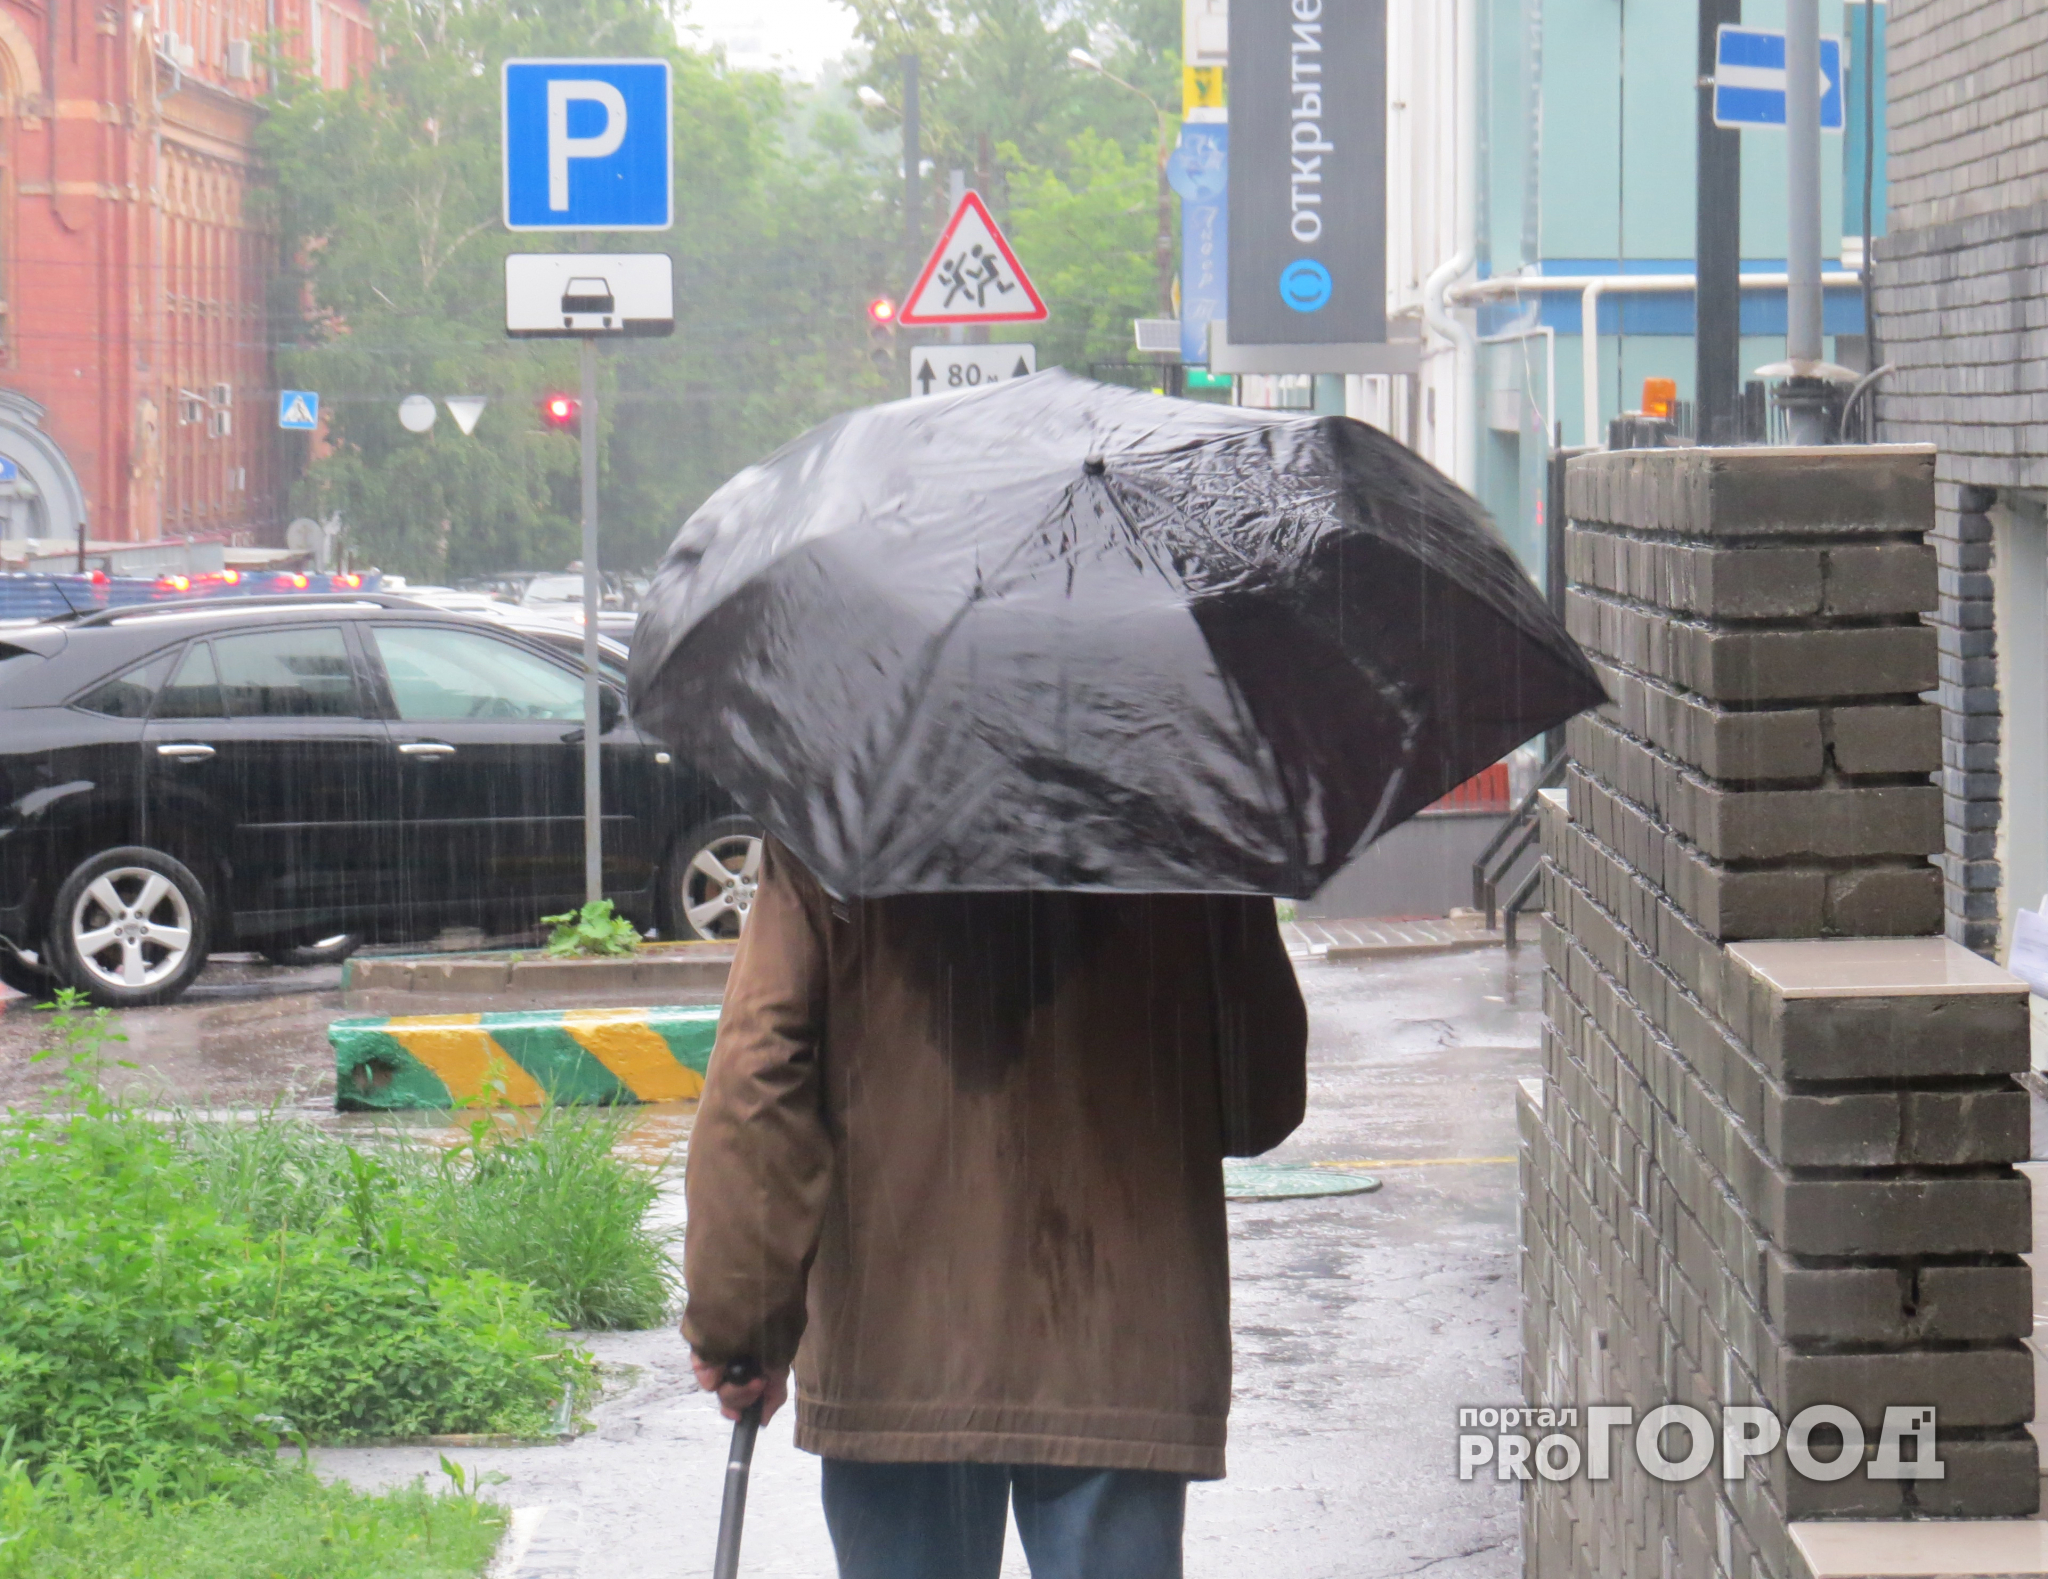 Нижний Новгород ждет дождливая и прохладная погода